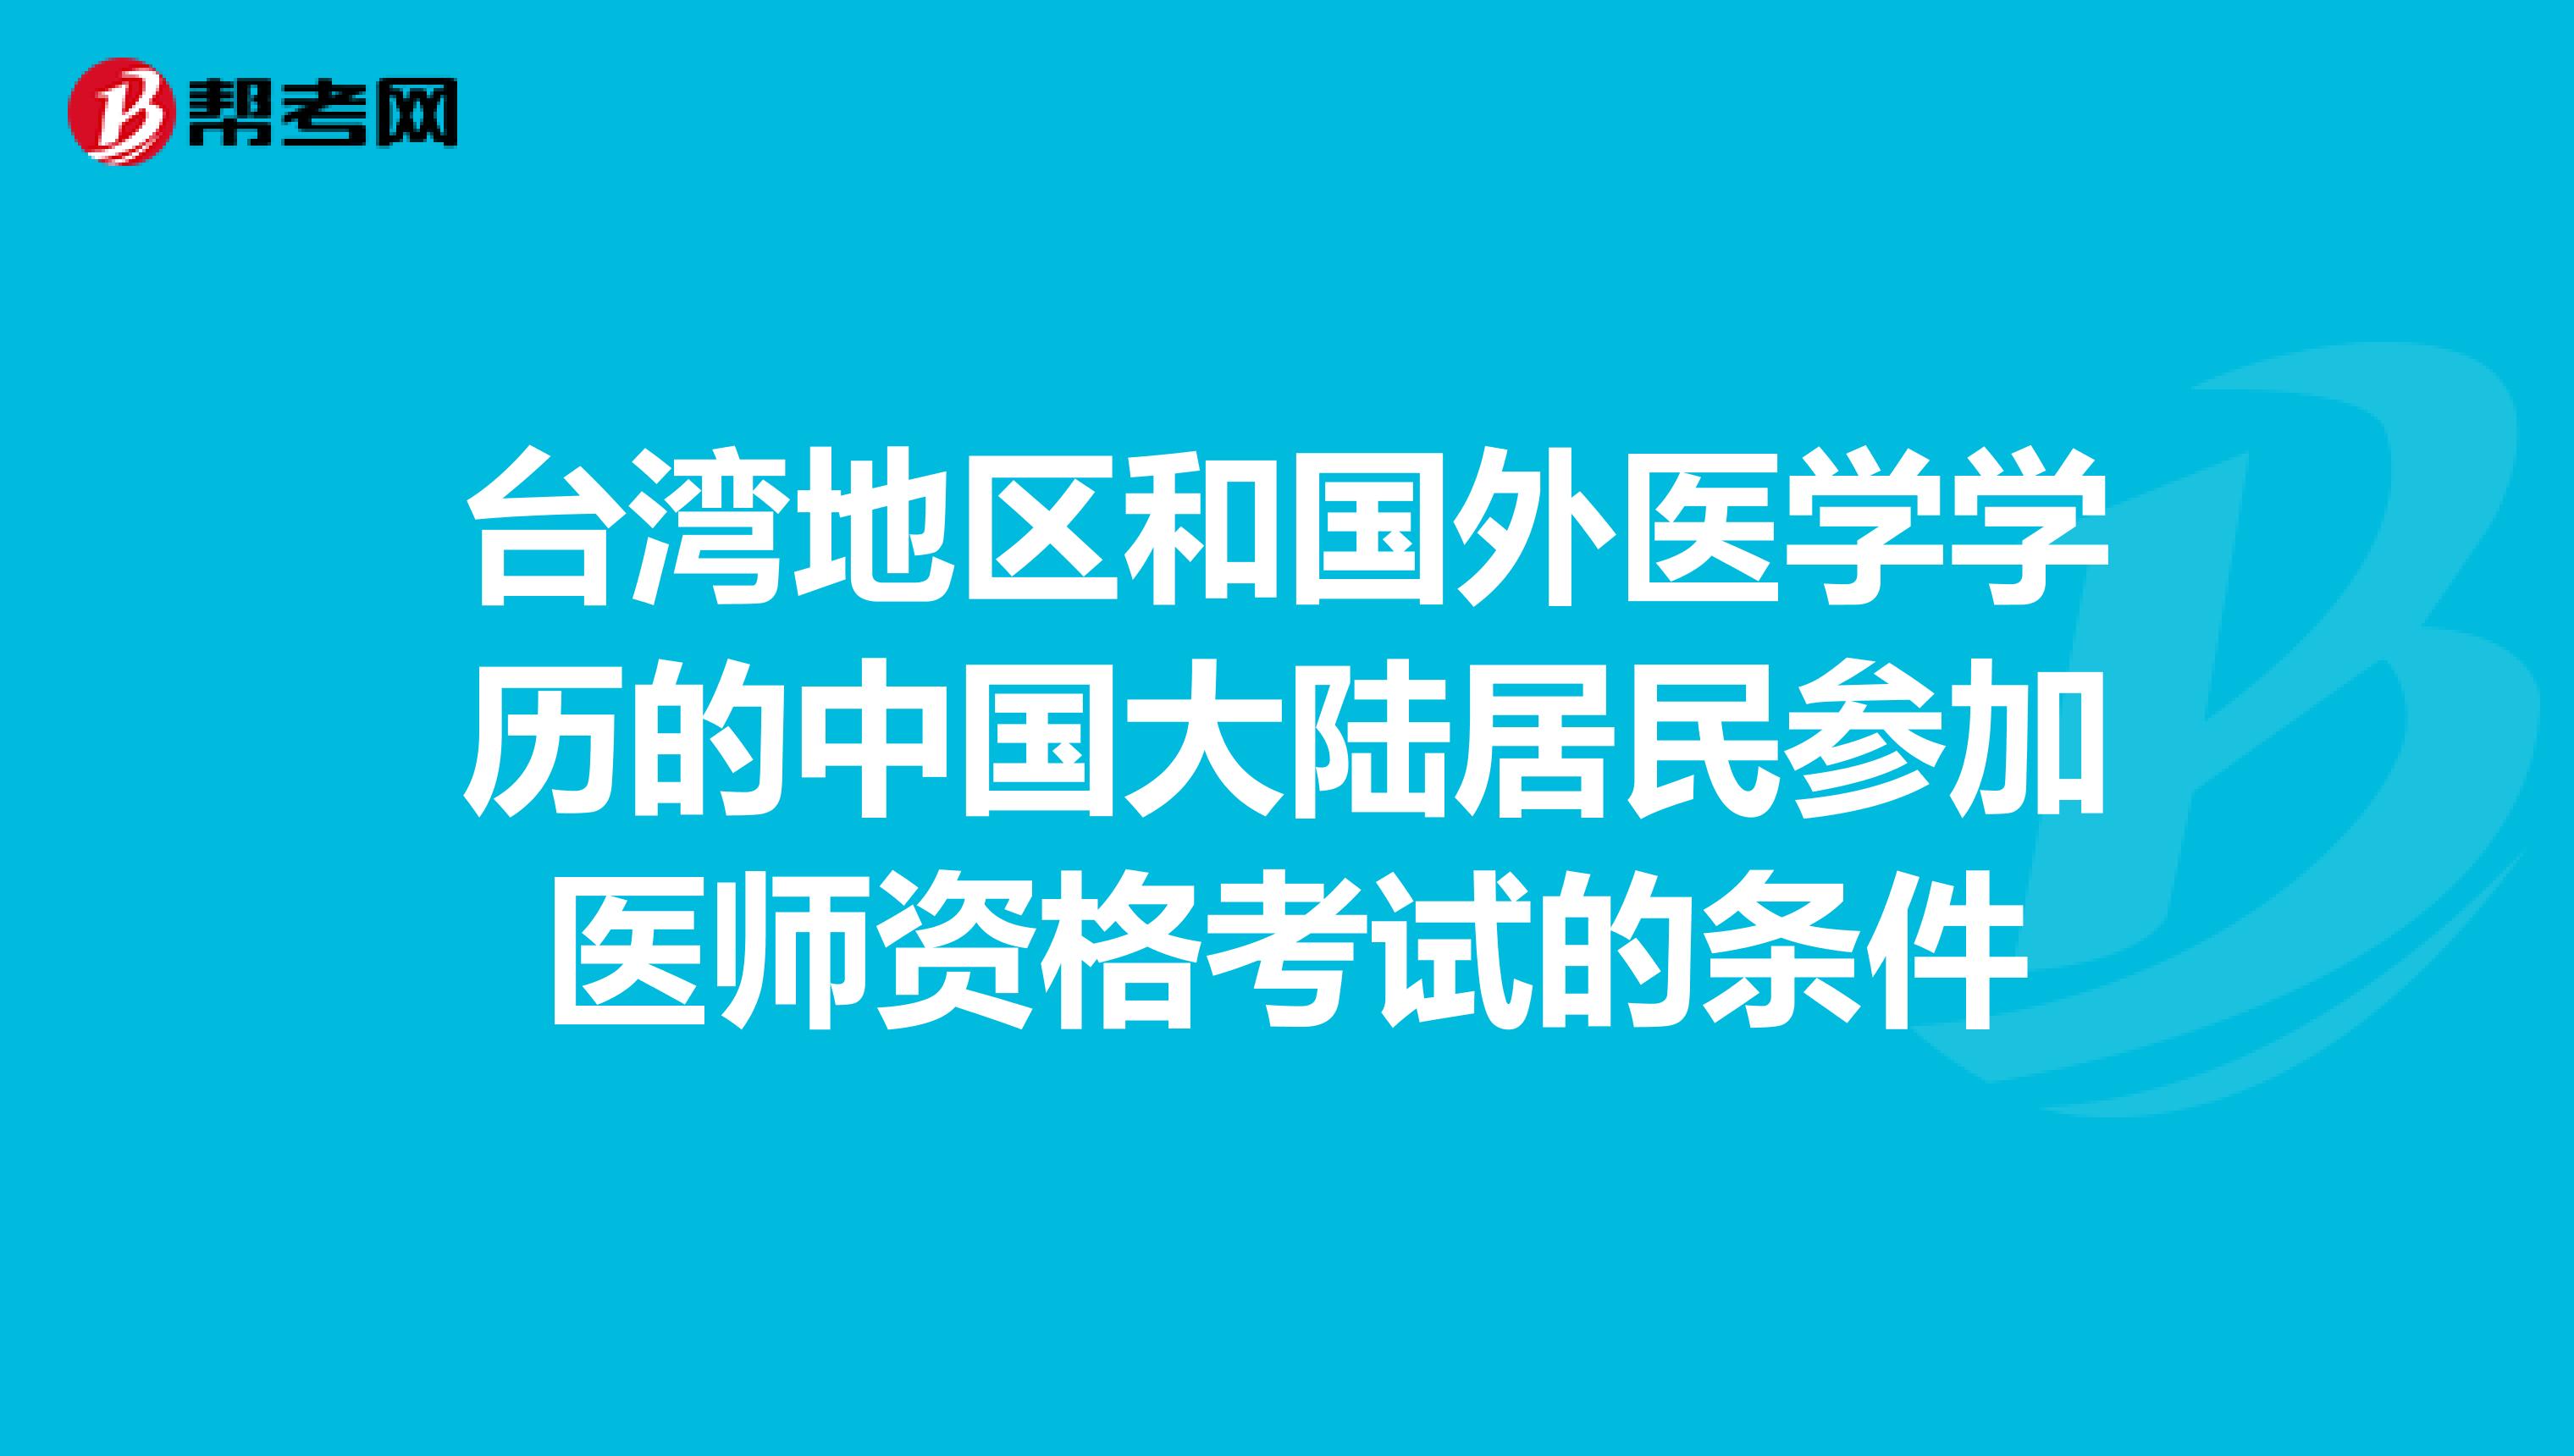 台湾地区和国外医学学历的中国大陆居民参加医师资格考试的条件